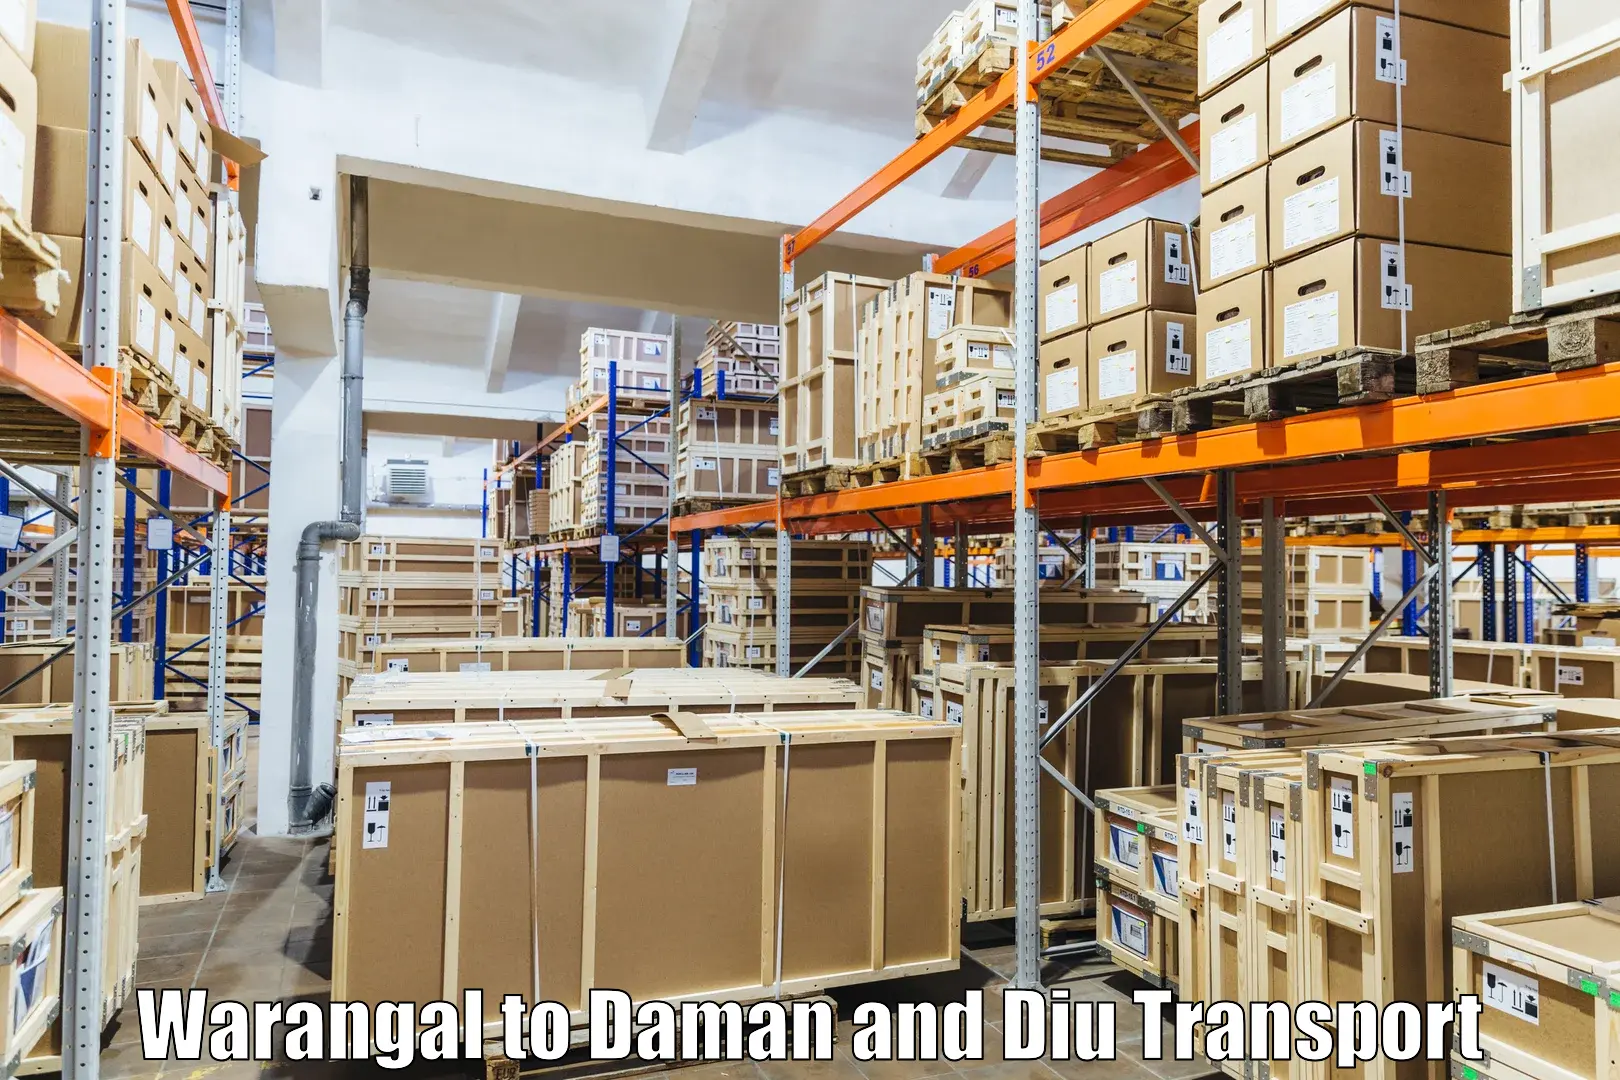 Online transport service Warangal to Daman